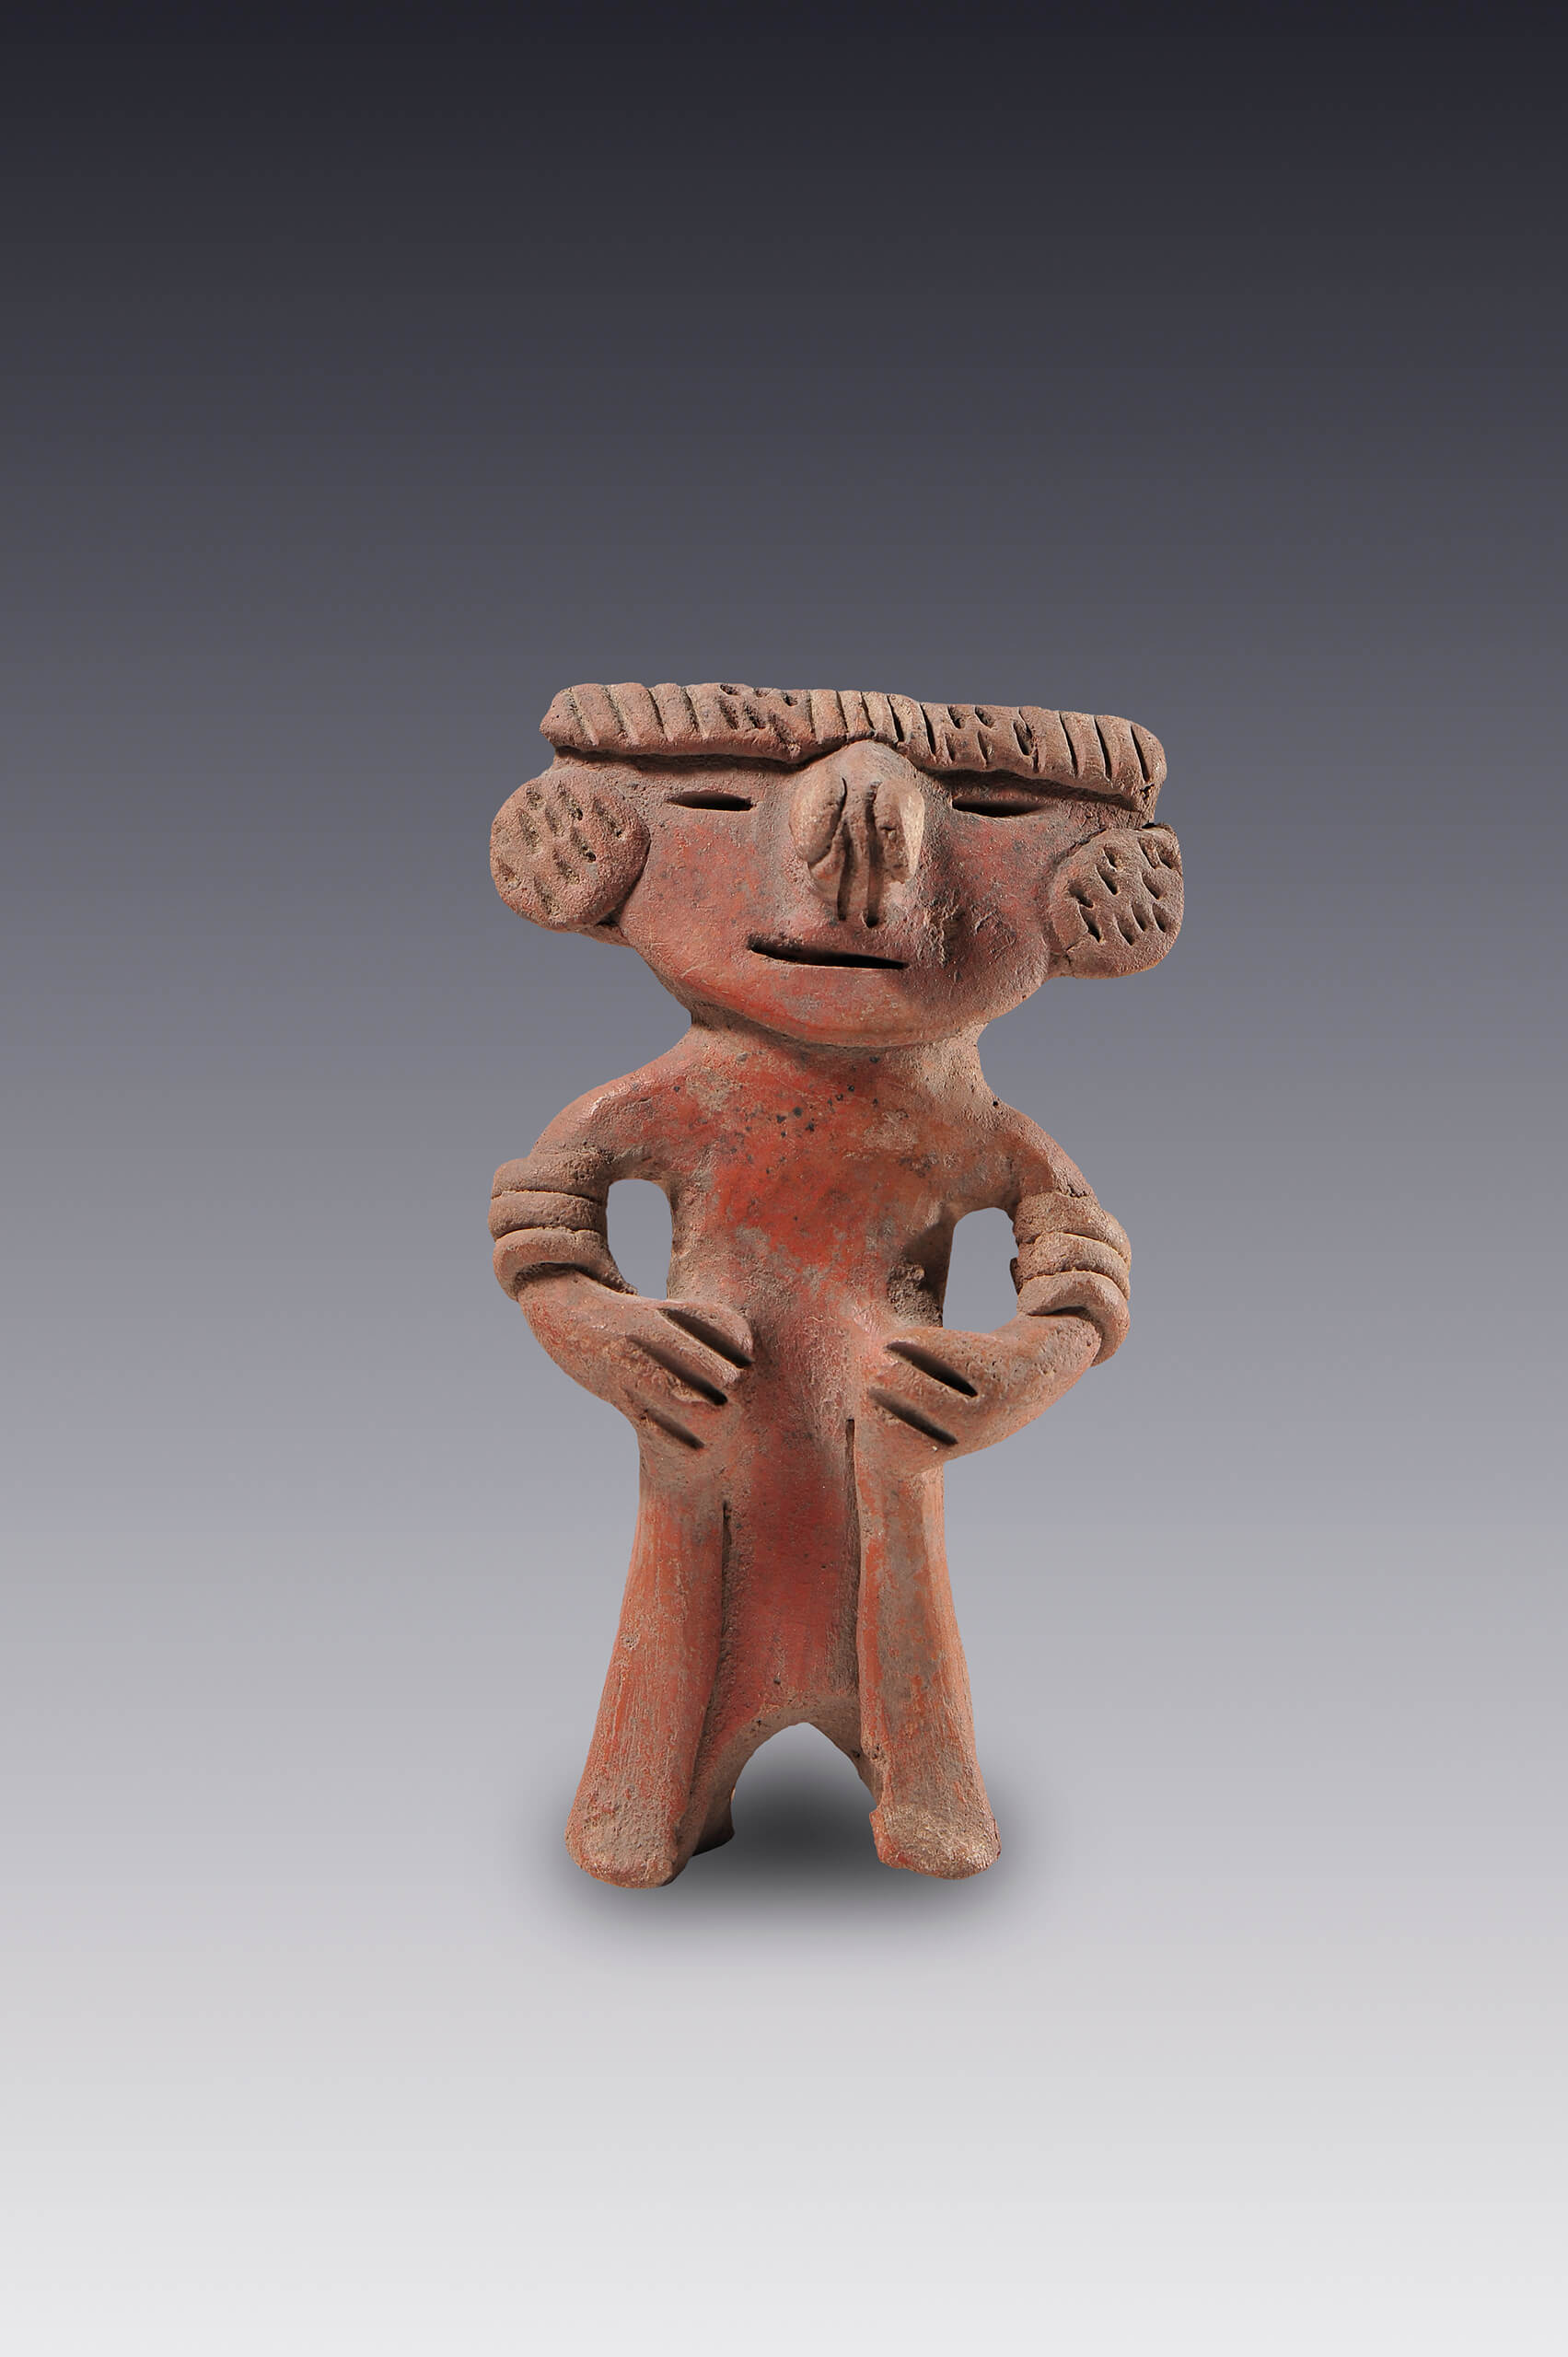 Hombres de rostro plano con nariz y nariguera sobresalientes | El México antiguo. Salas de Arte Prehispánico | Museo Amparo, Puebla